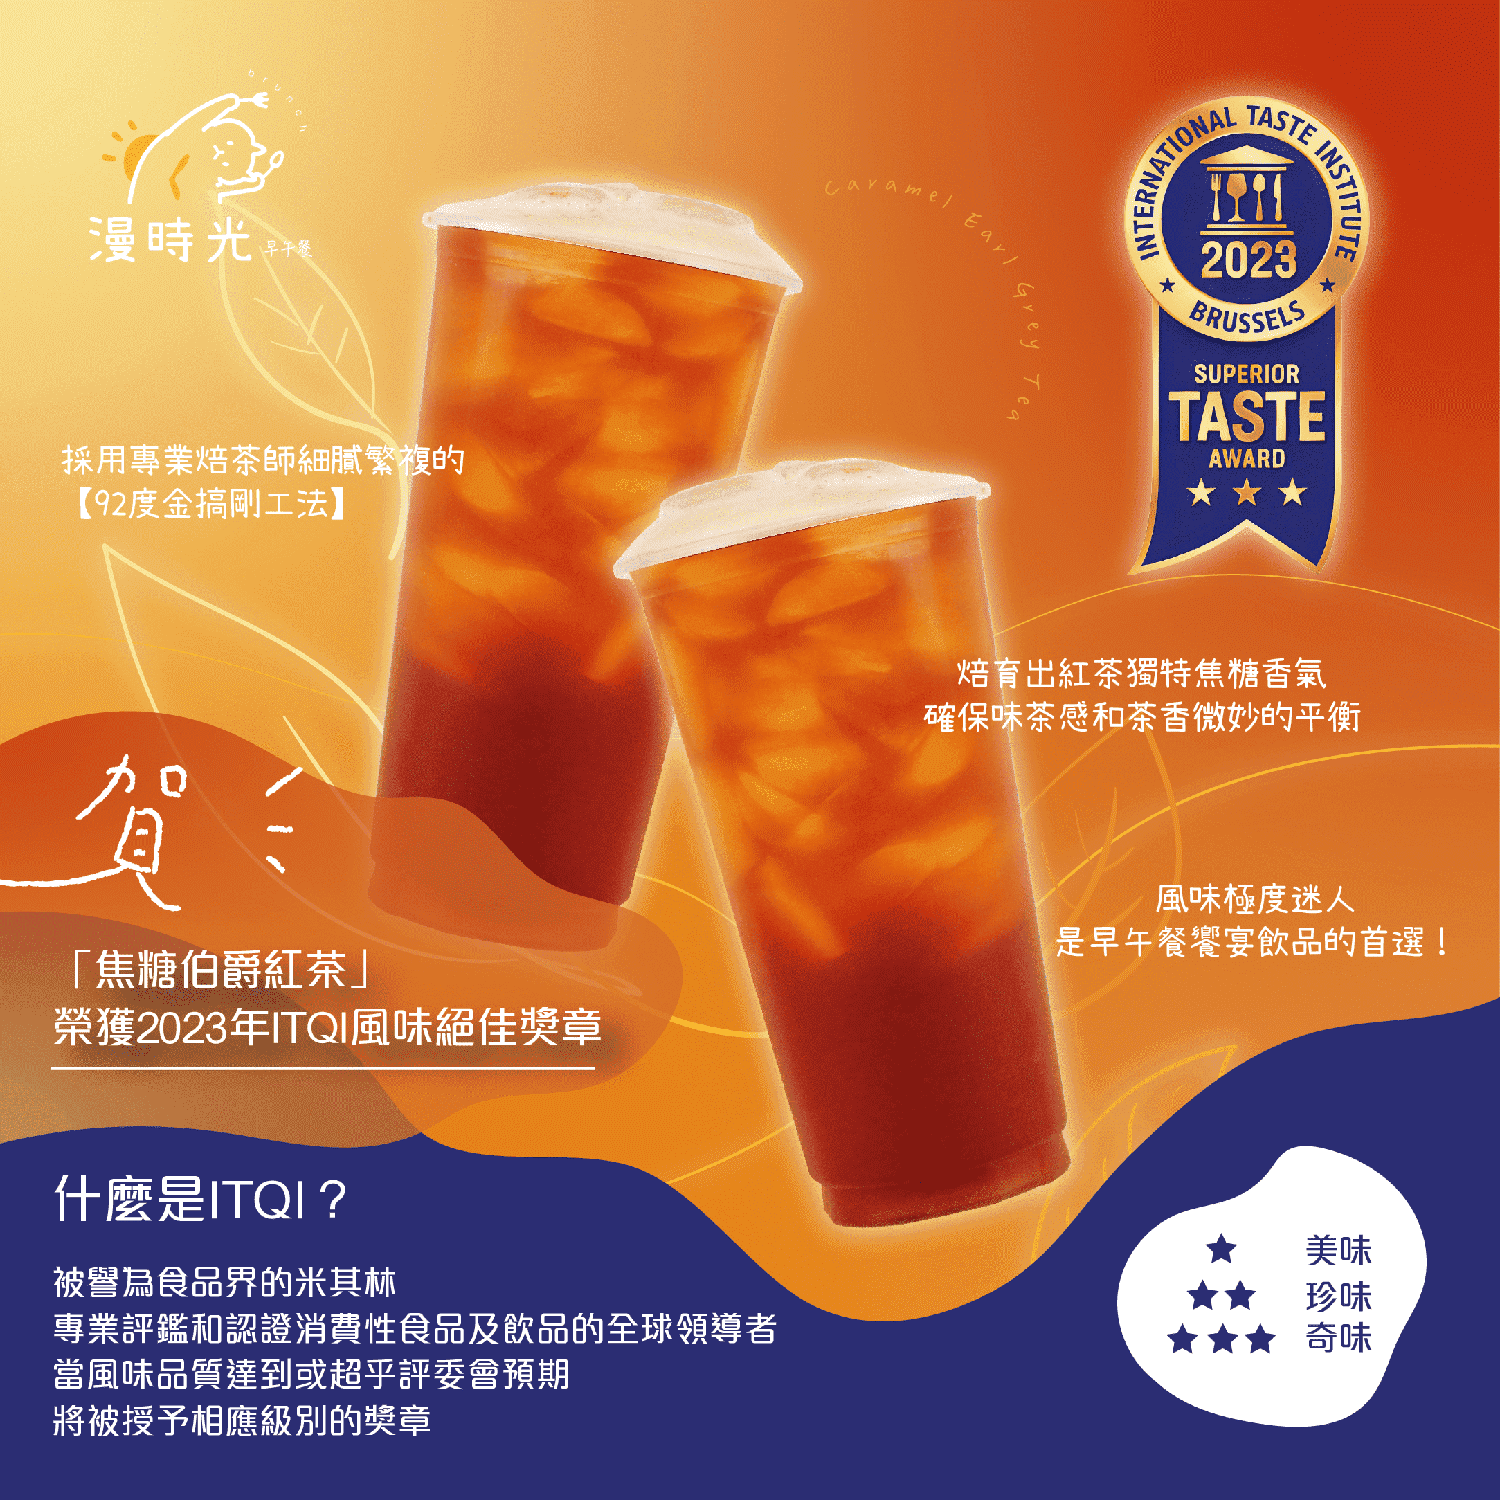 賀「焦糖伯爵紅茶」榮獲2023年ITQI風味絕佳獎章